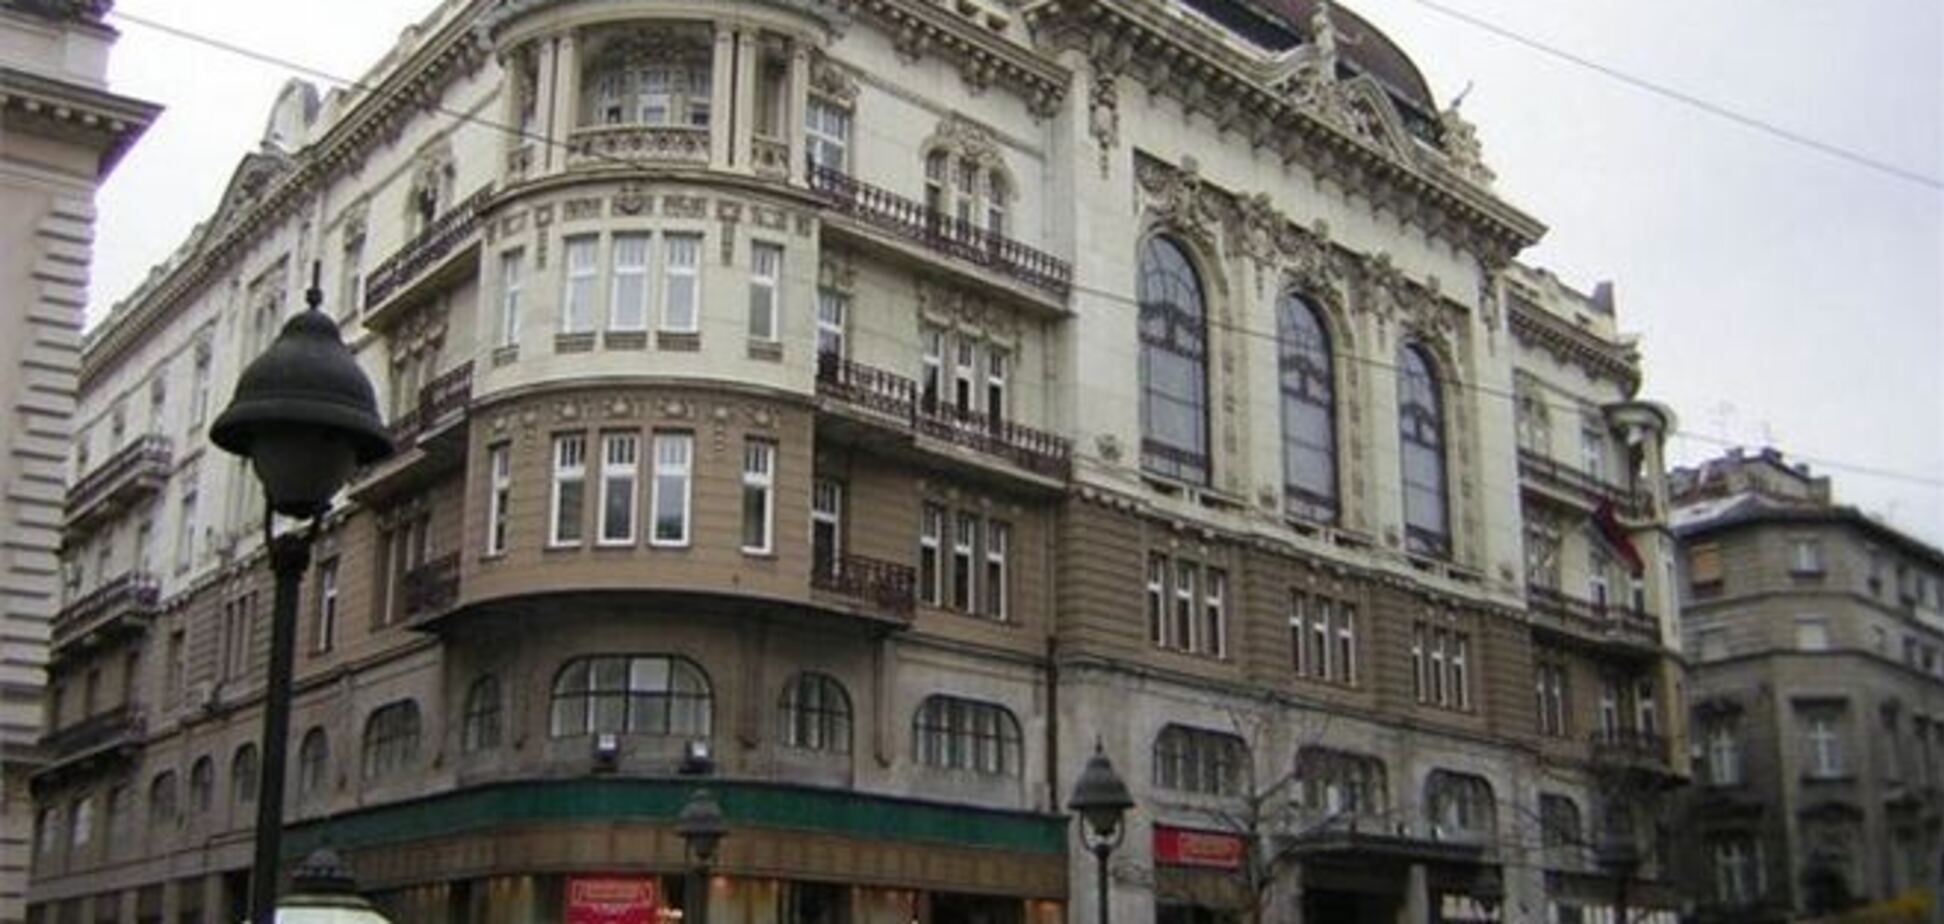 После кризиса количество сделок с недвижимостью в Белграде сократилось в 10 раз